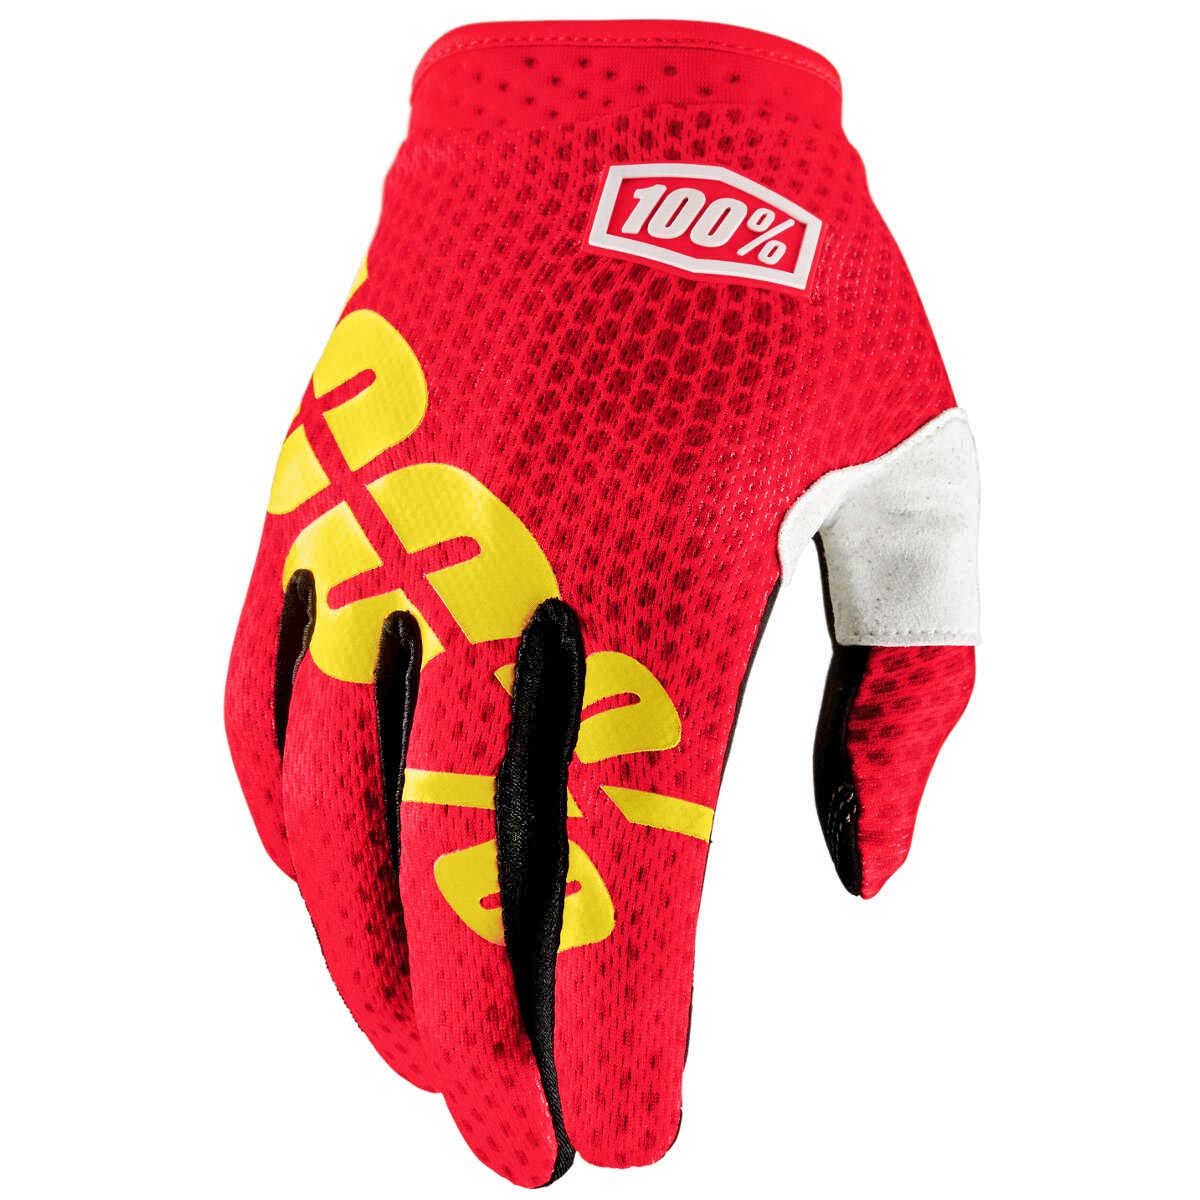 100% Bike Gloves iTrack Fire Red II